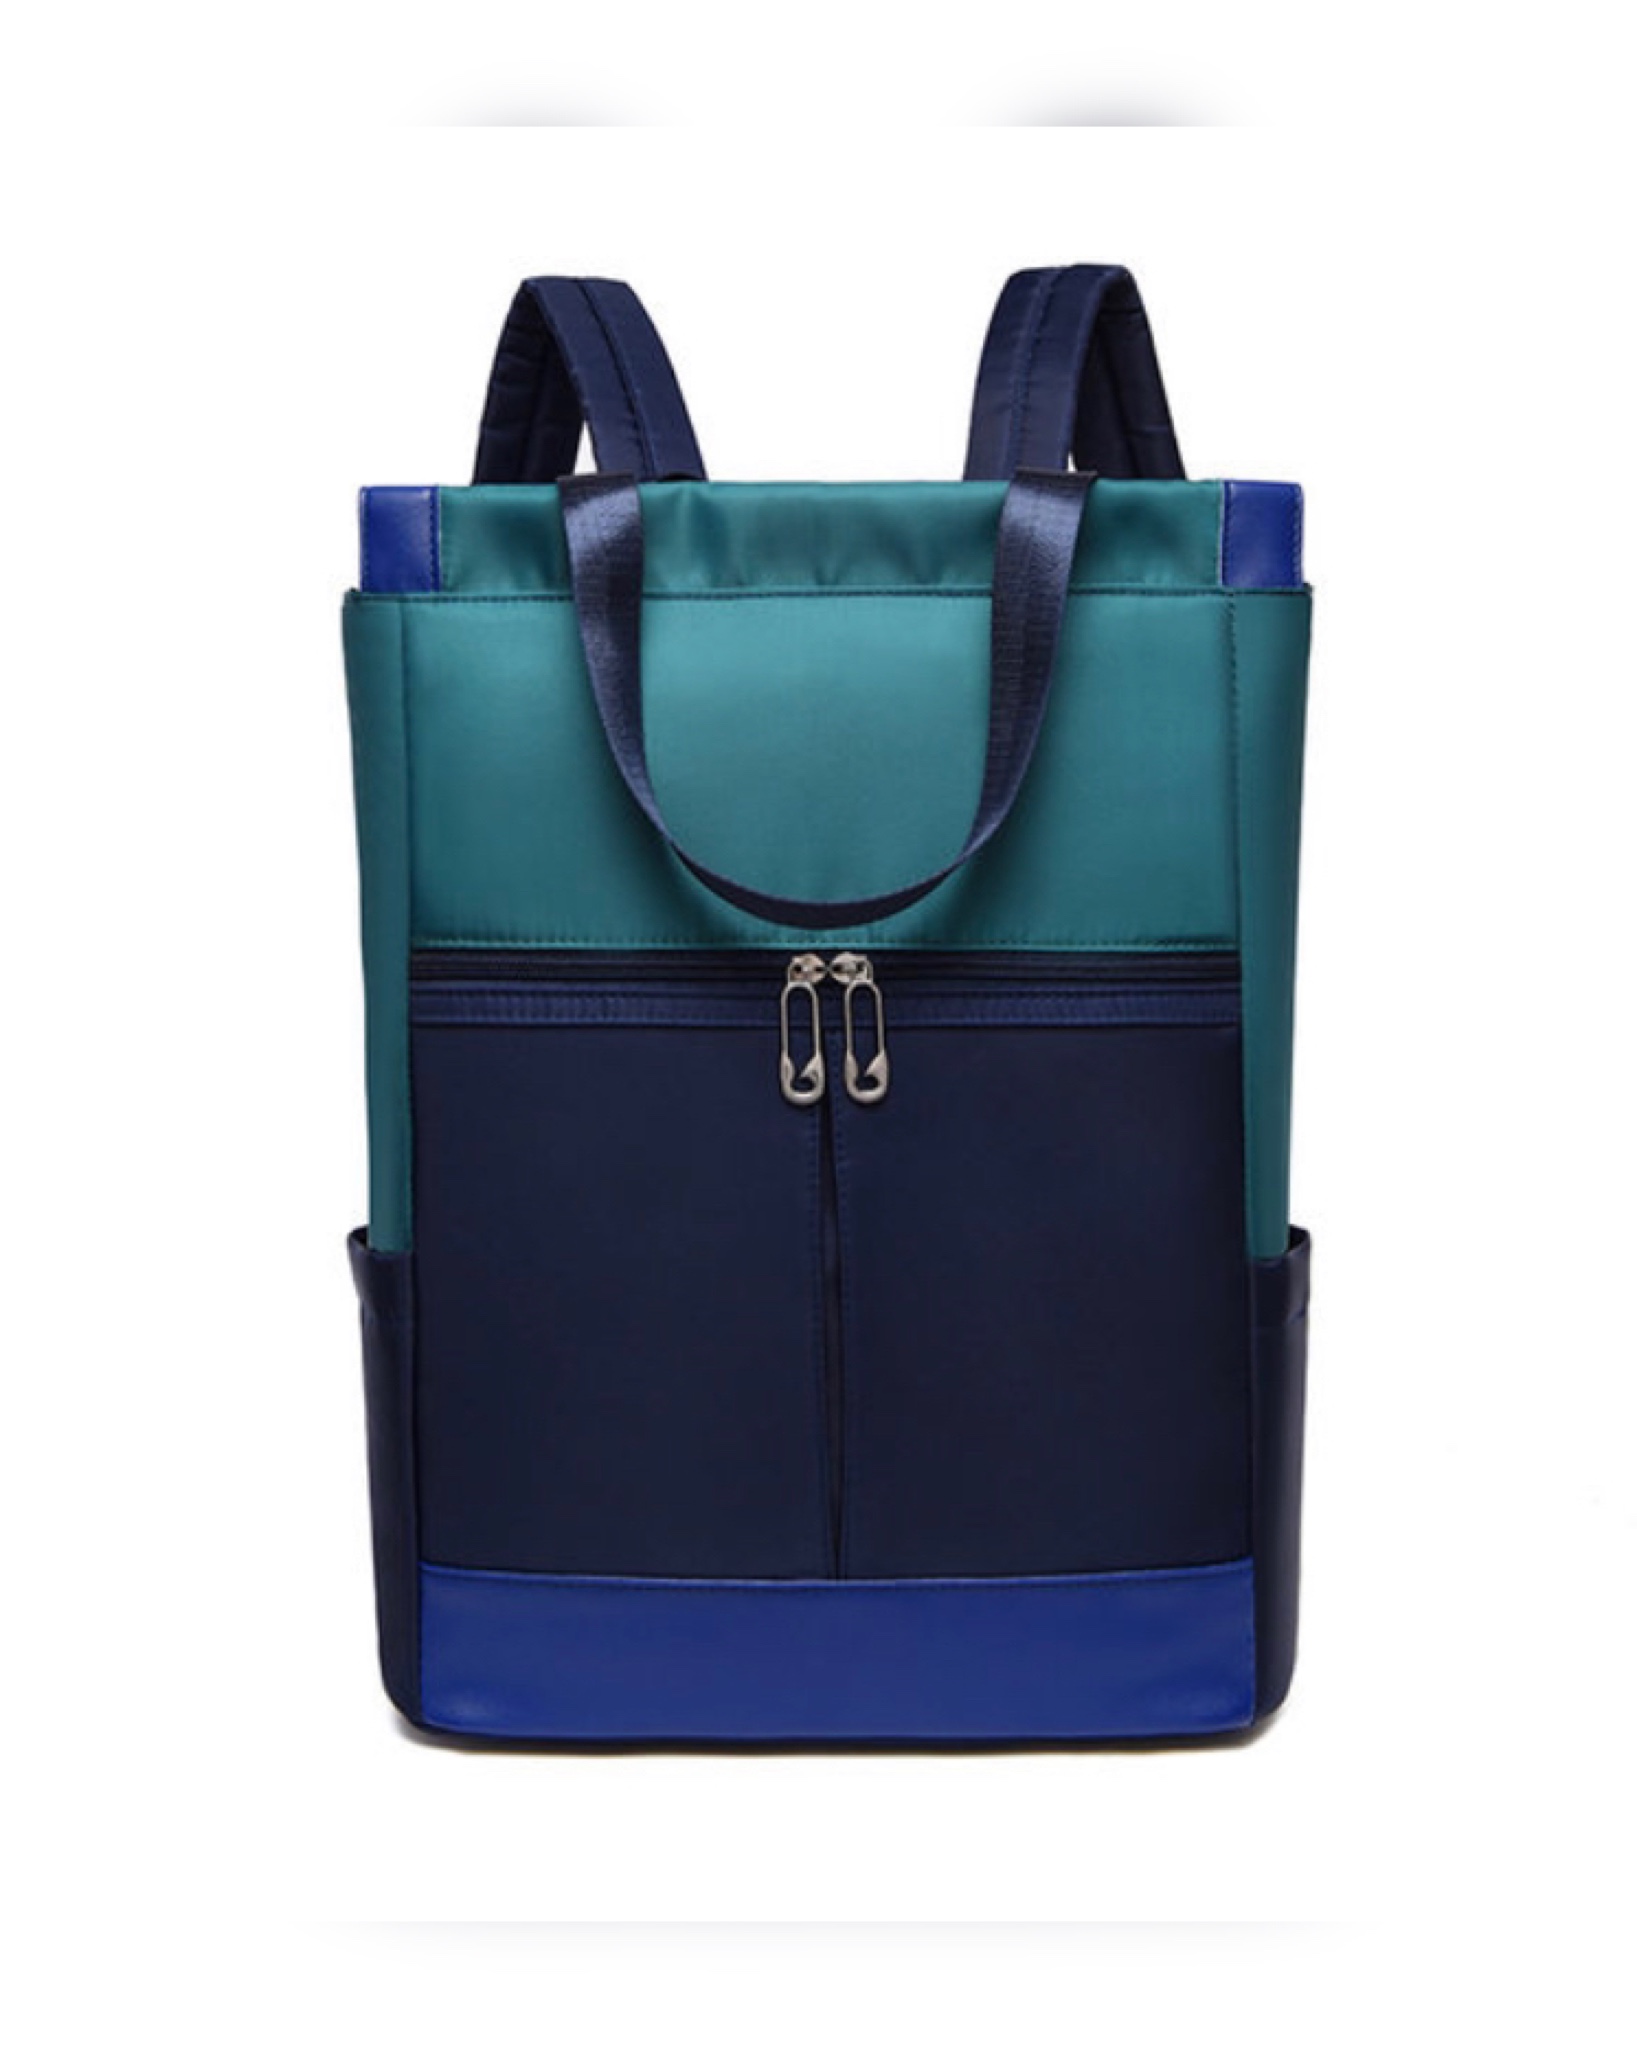 Сумка-рюкзак женская EL_02 изумрудная TESORO. Цвет: зеленый; синий